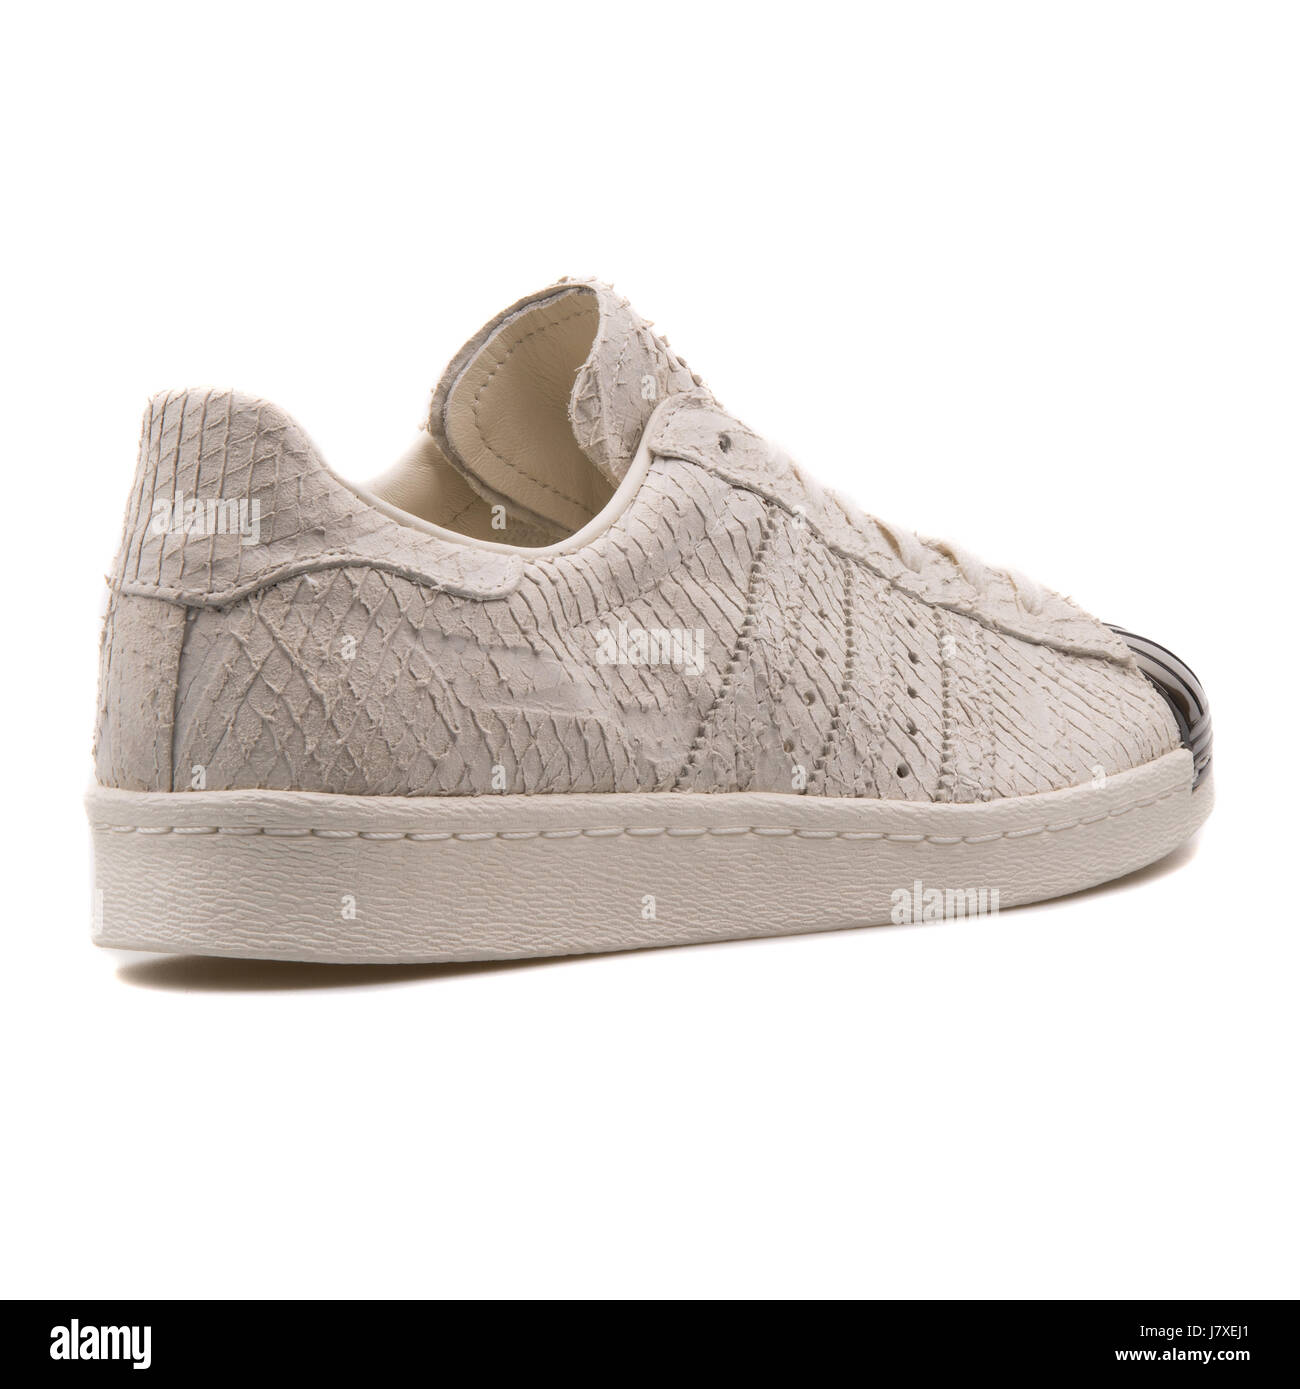 Adidas Superstar 80S puntera metálica W Mujer cuero blanco clásico con  patrón de piel de serpiente zapatillas - S82483 Fotografía de stock - Alamy